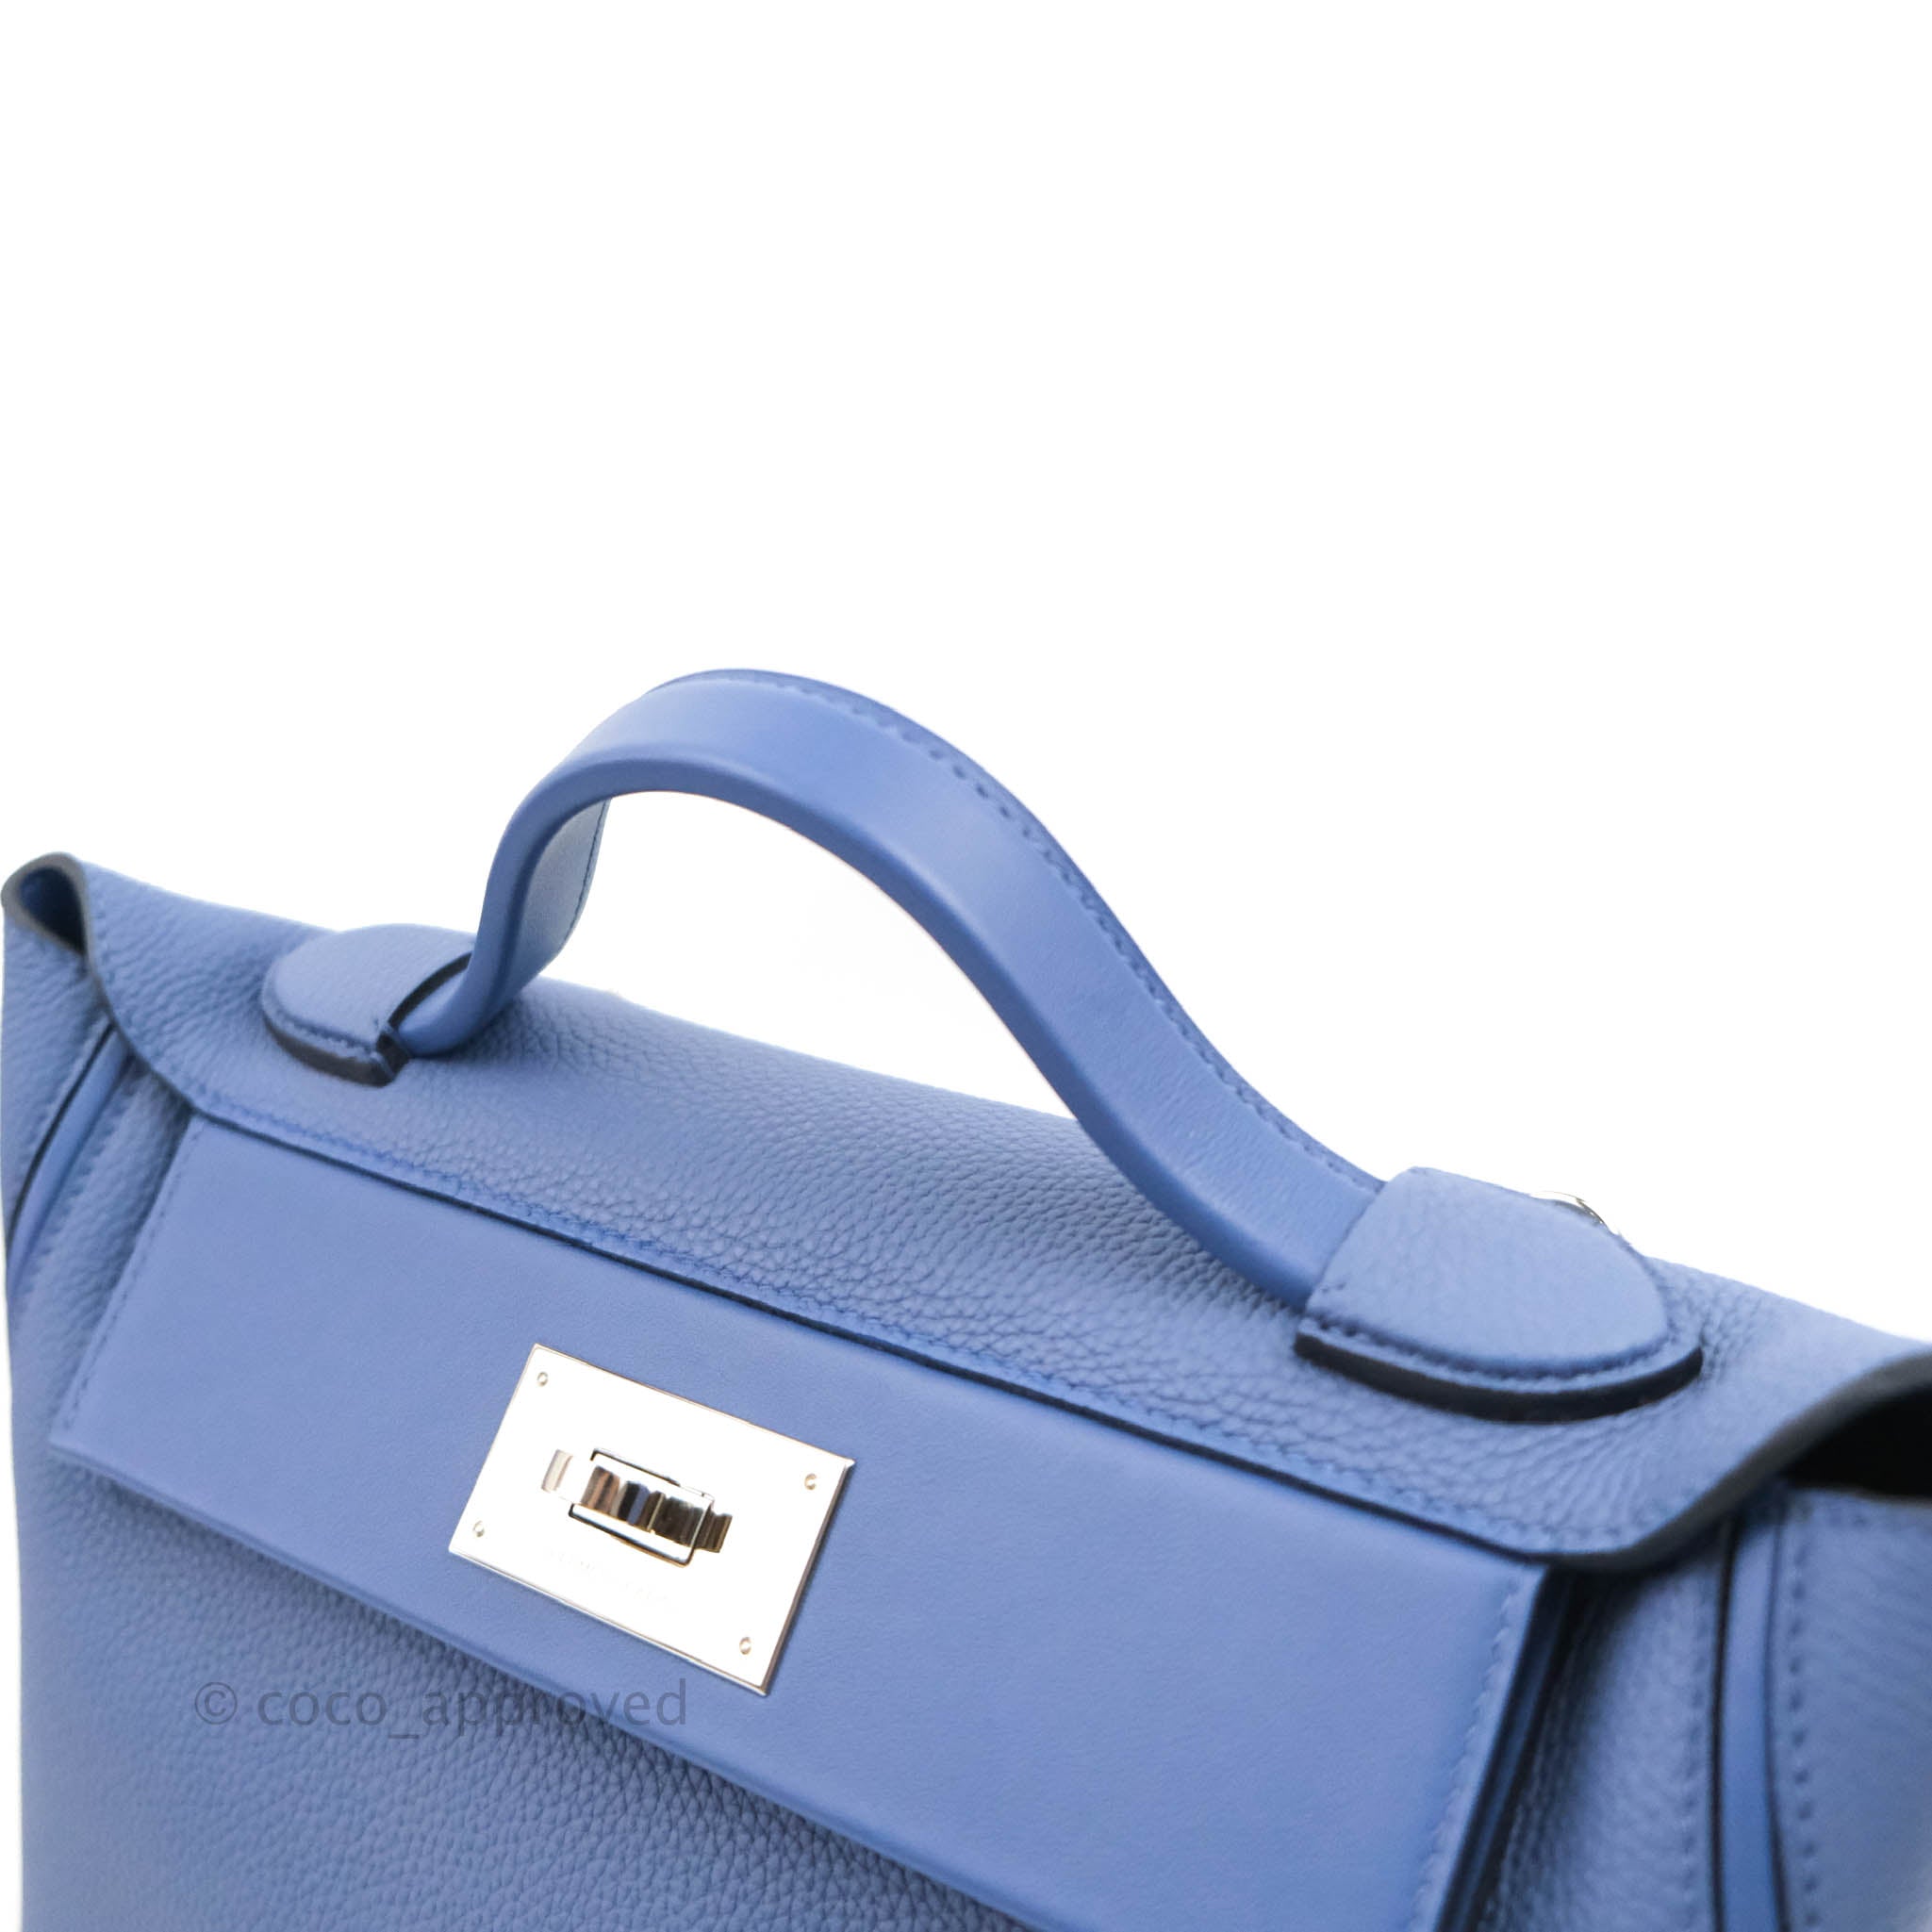 Hermès Fauve Barenia 24/24 29 PHW Handbag